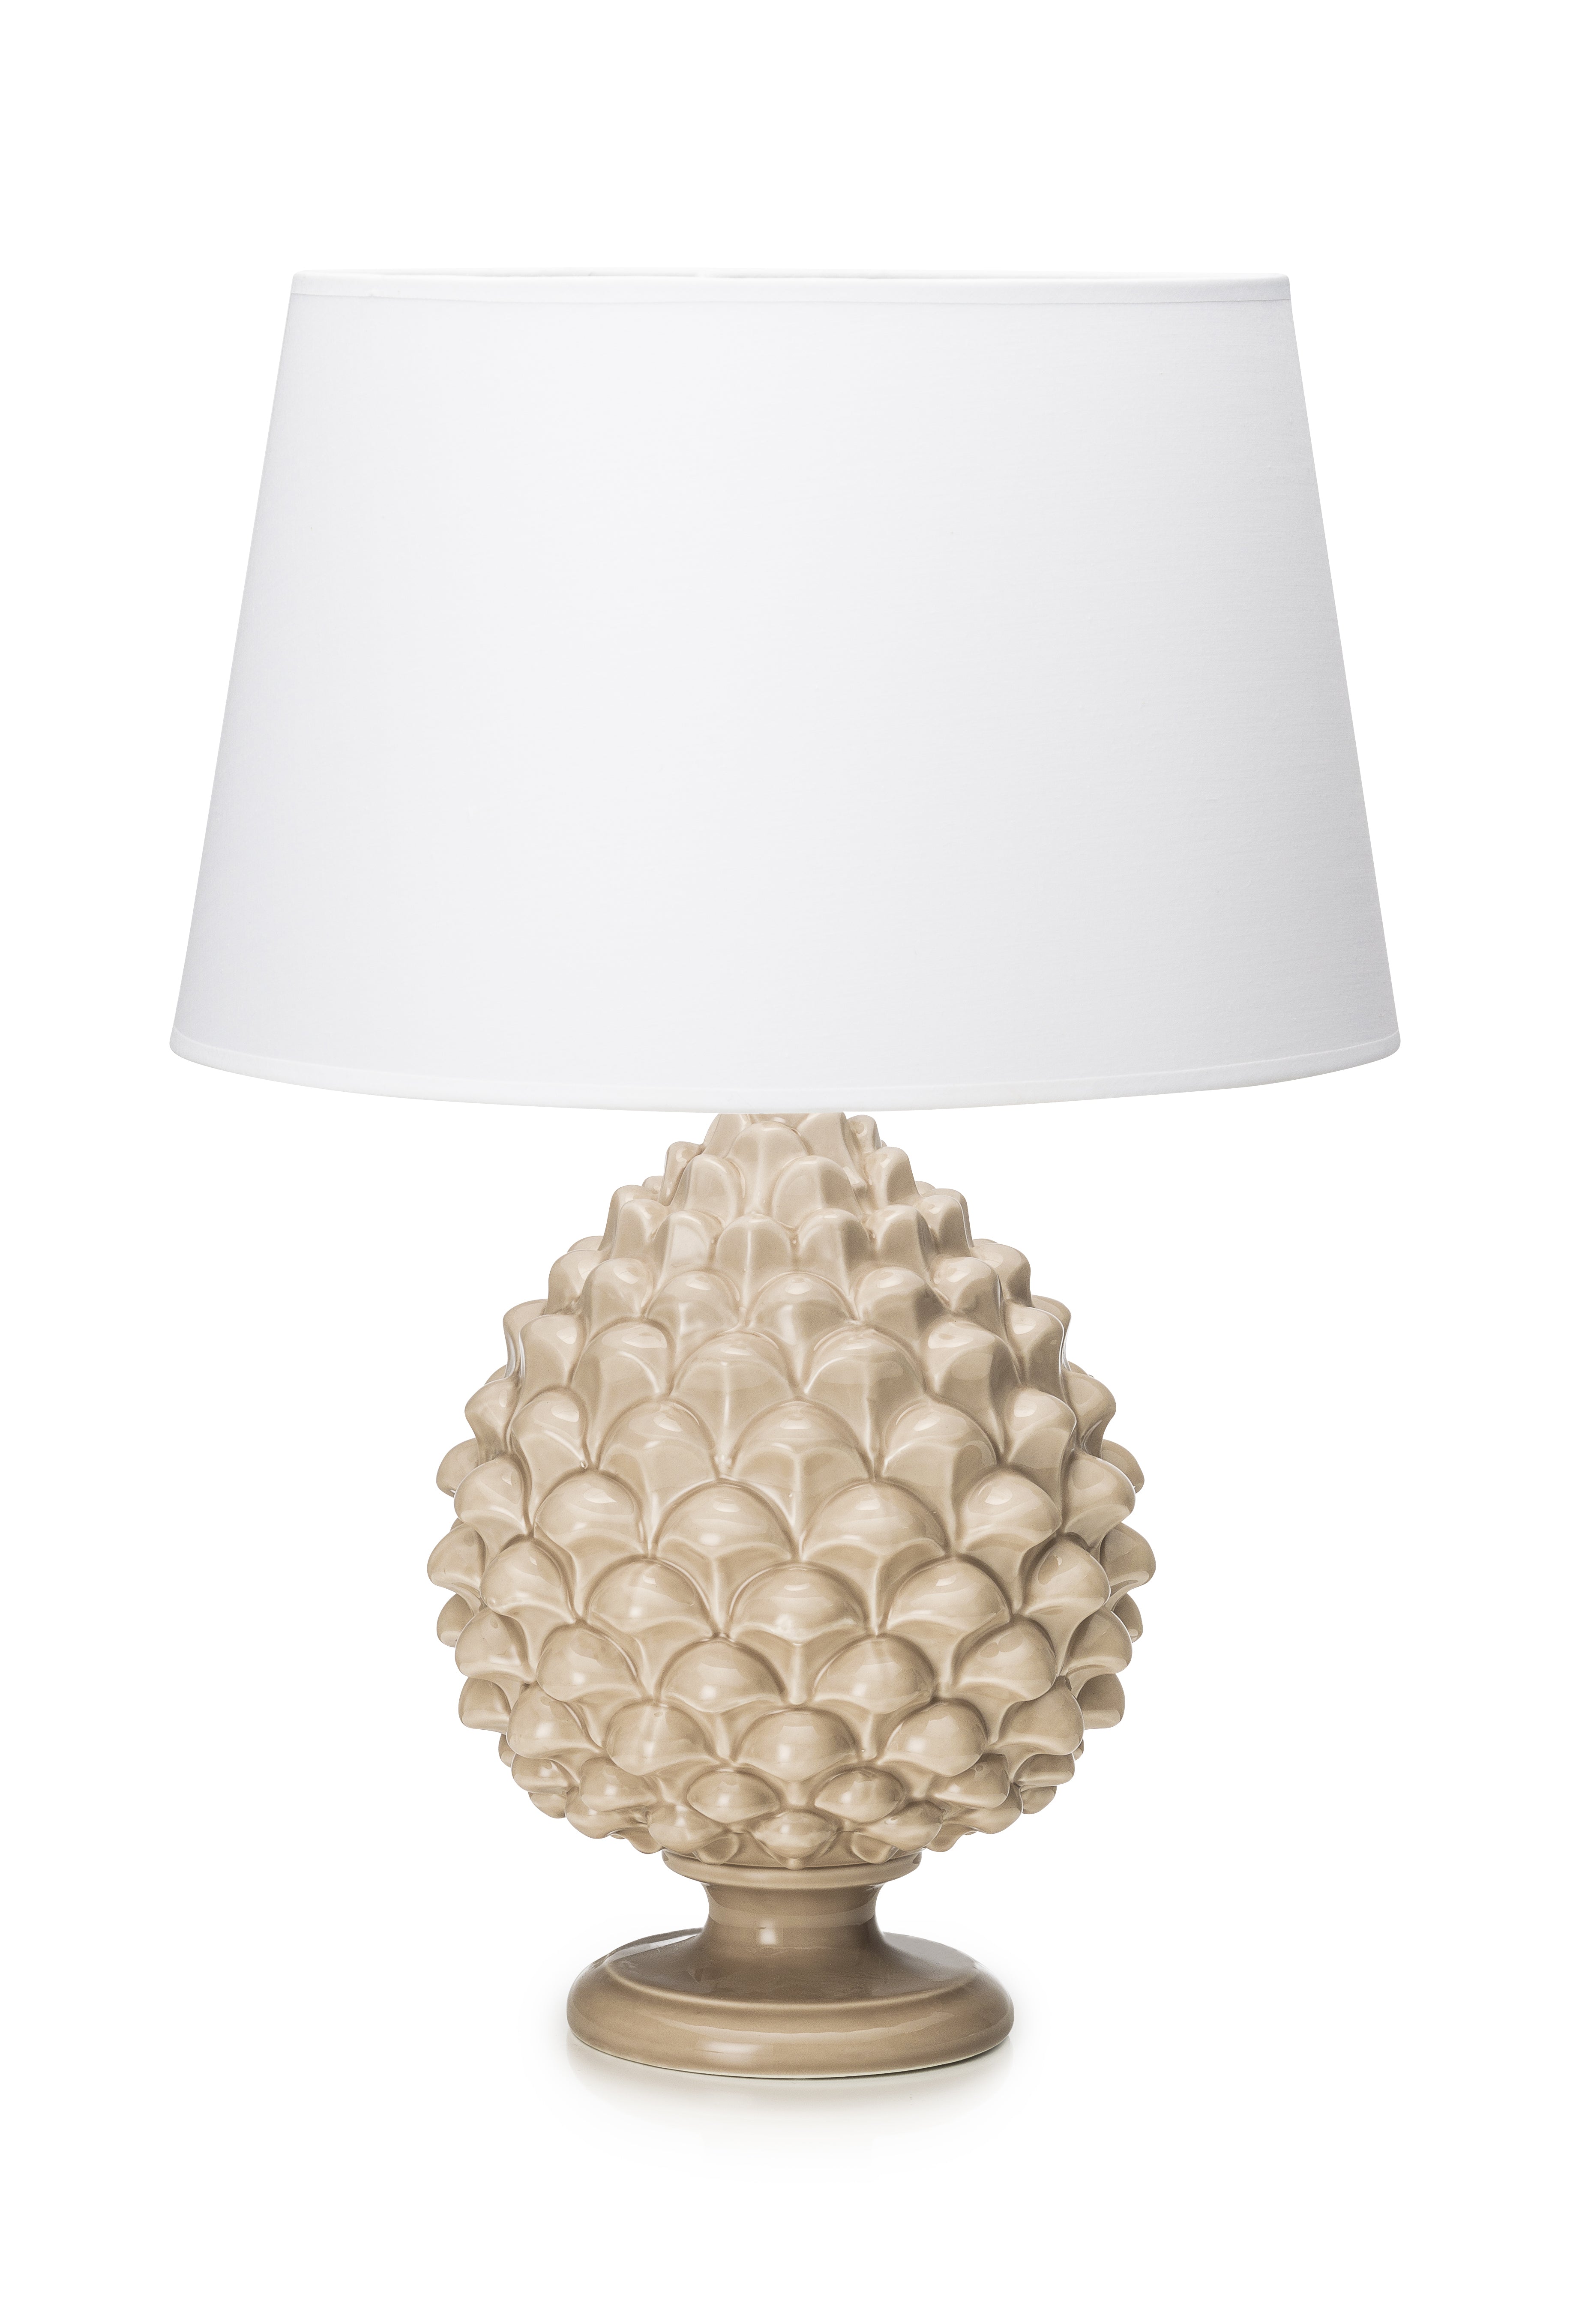 Palais Royal Pinecone lamp with lampshade, 50 cm 